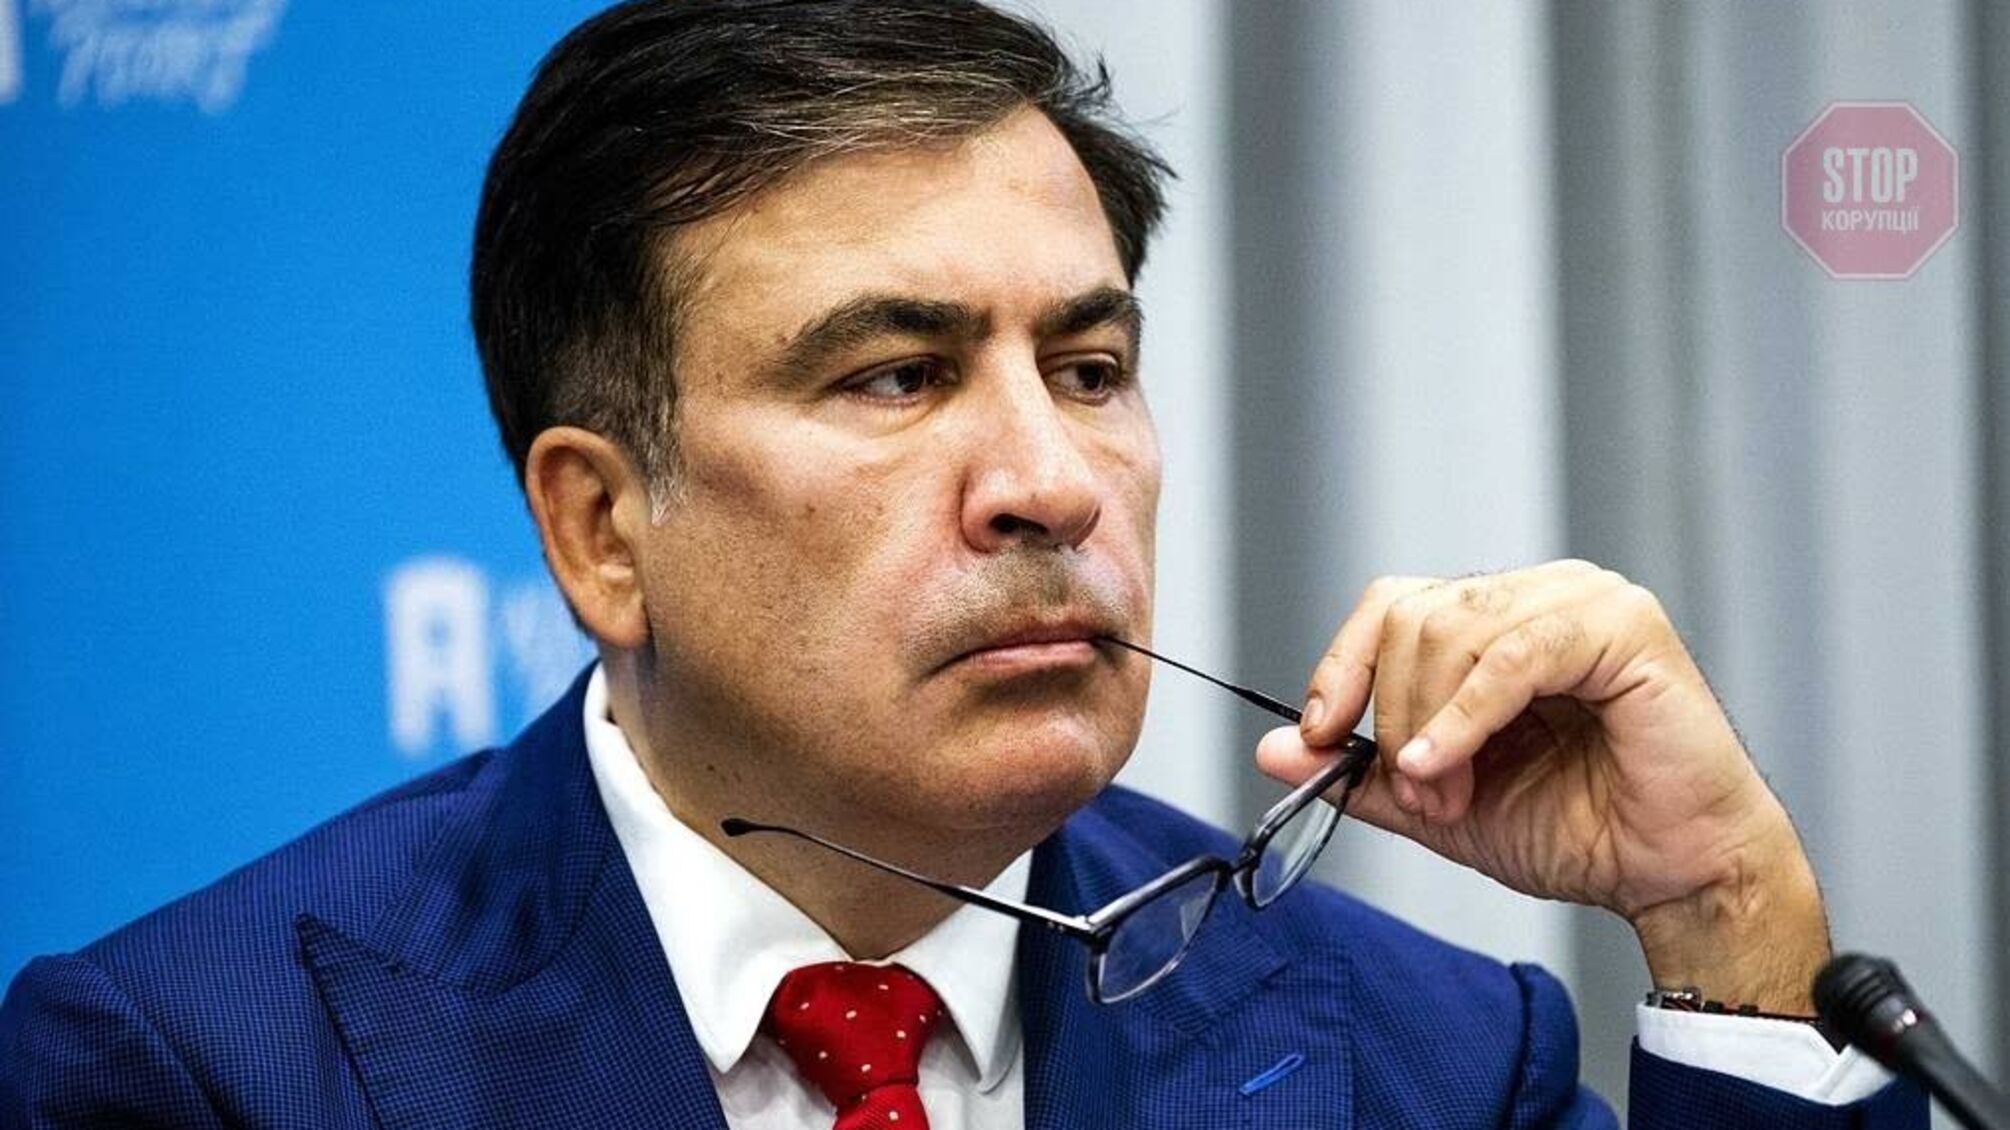 Состояние Саакашвили: врачи диагностировали посттравматическое стрессовое расстройство